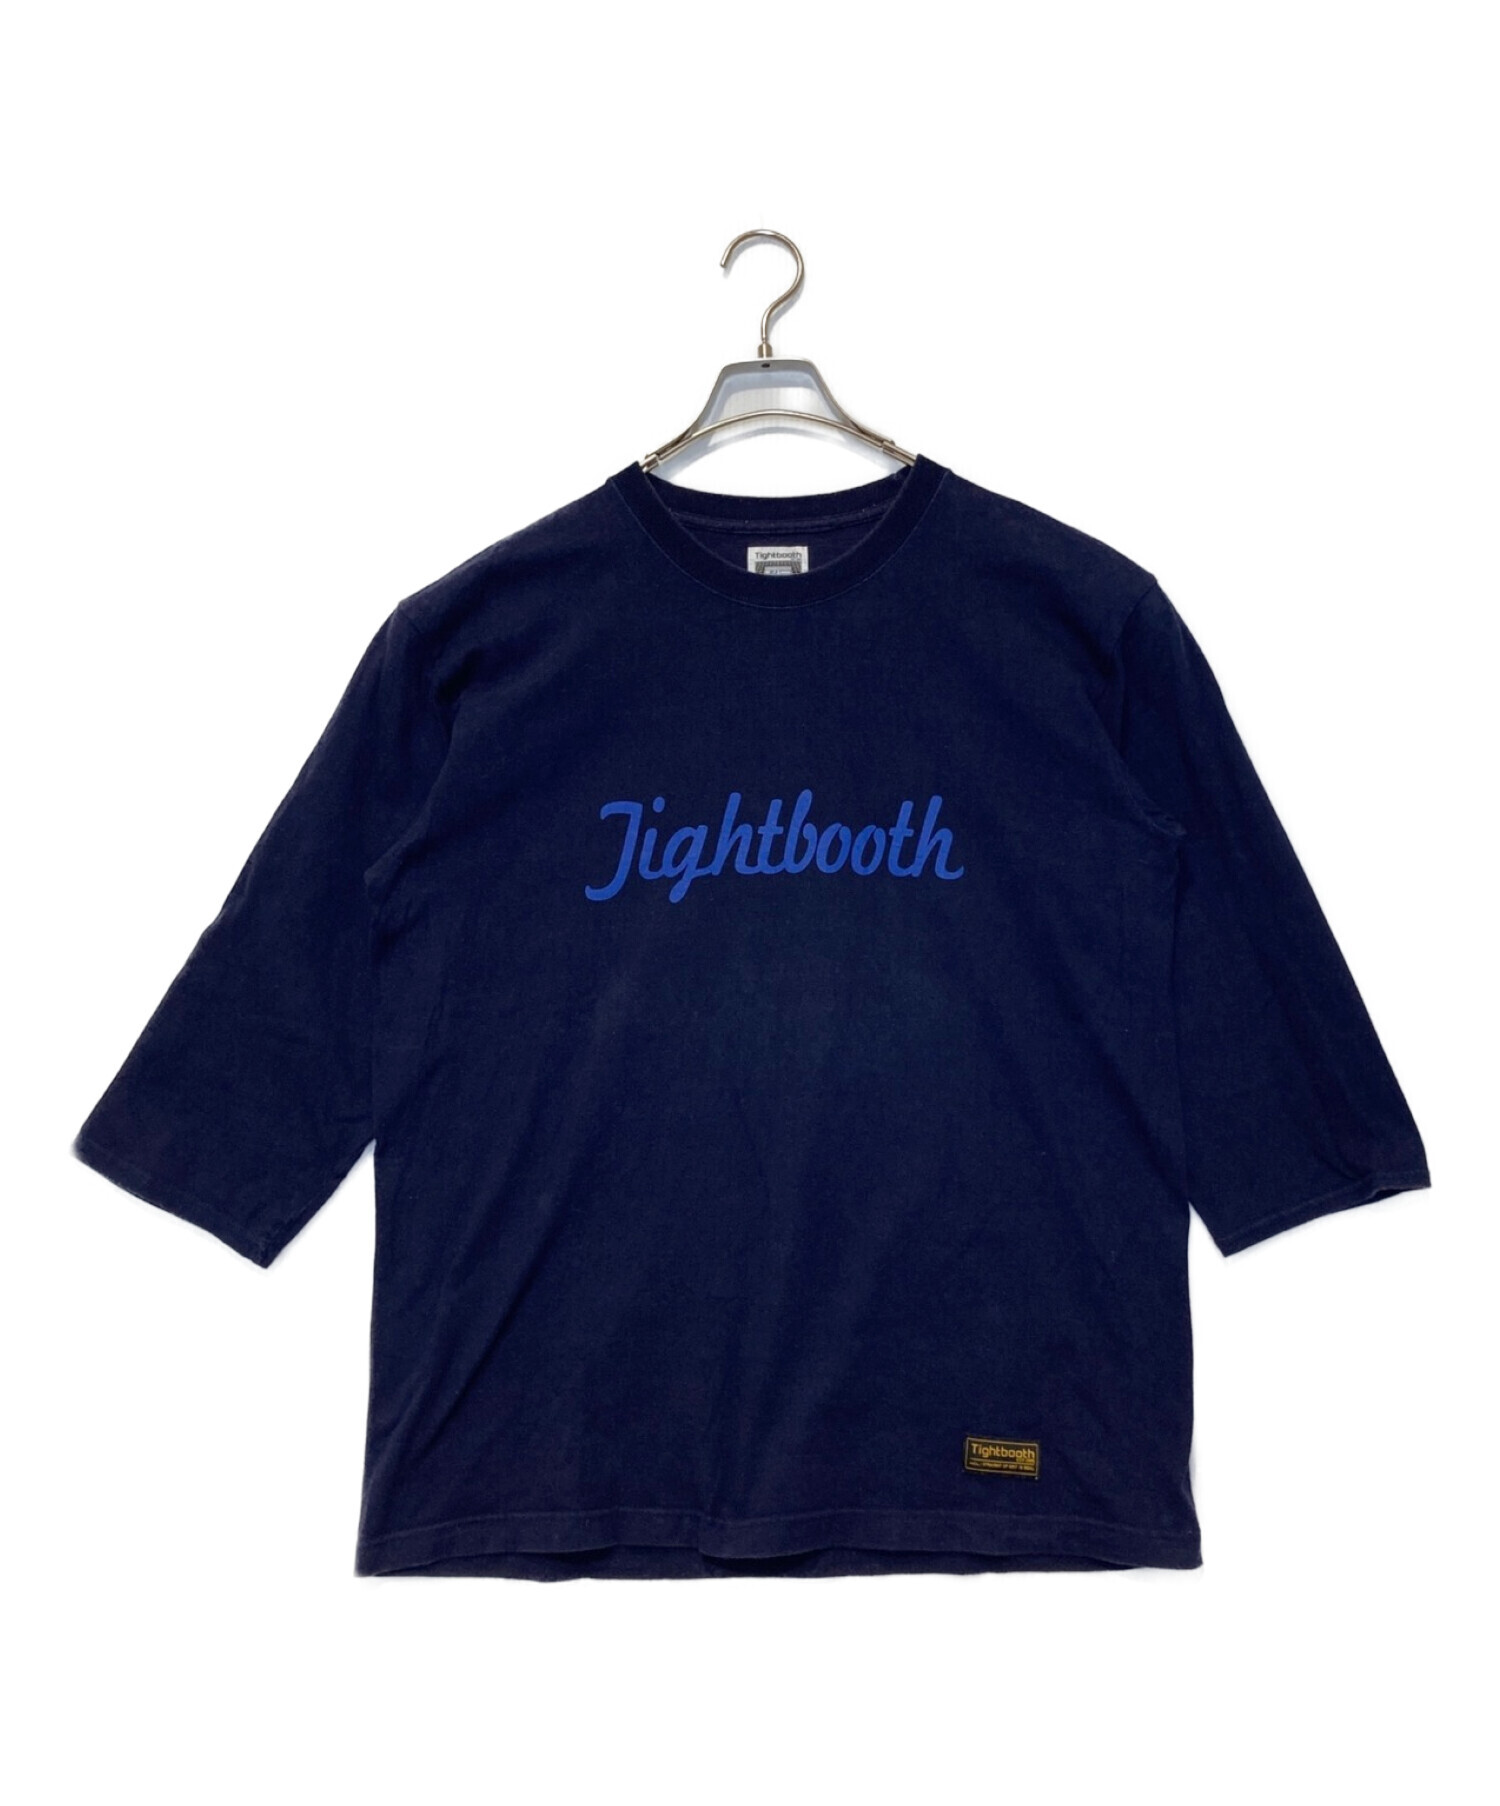 TIGHTBOOTH PRODUCTION (タイトブースプロダクション) Tシャツ ネイビー サイズ:L